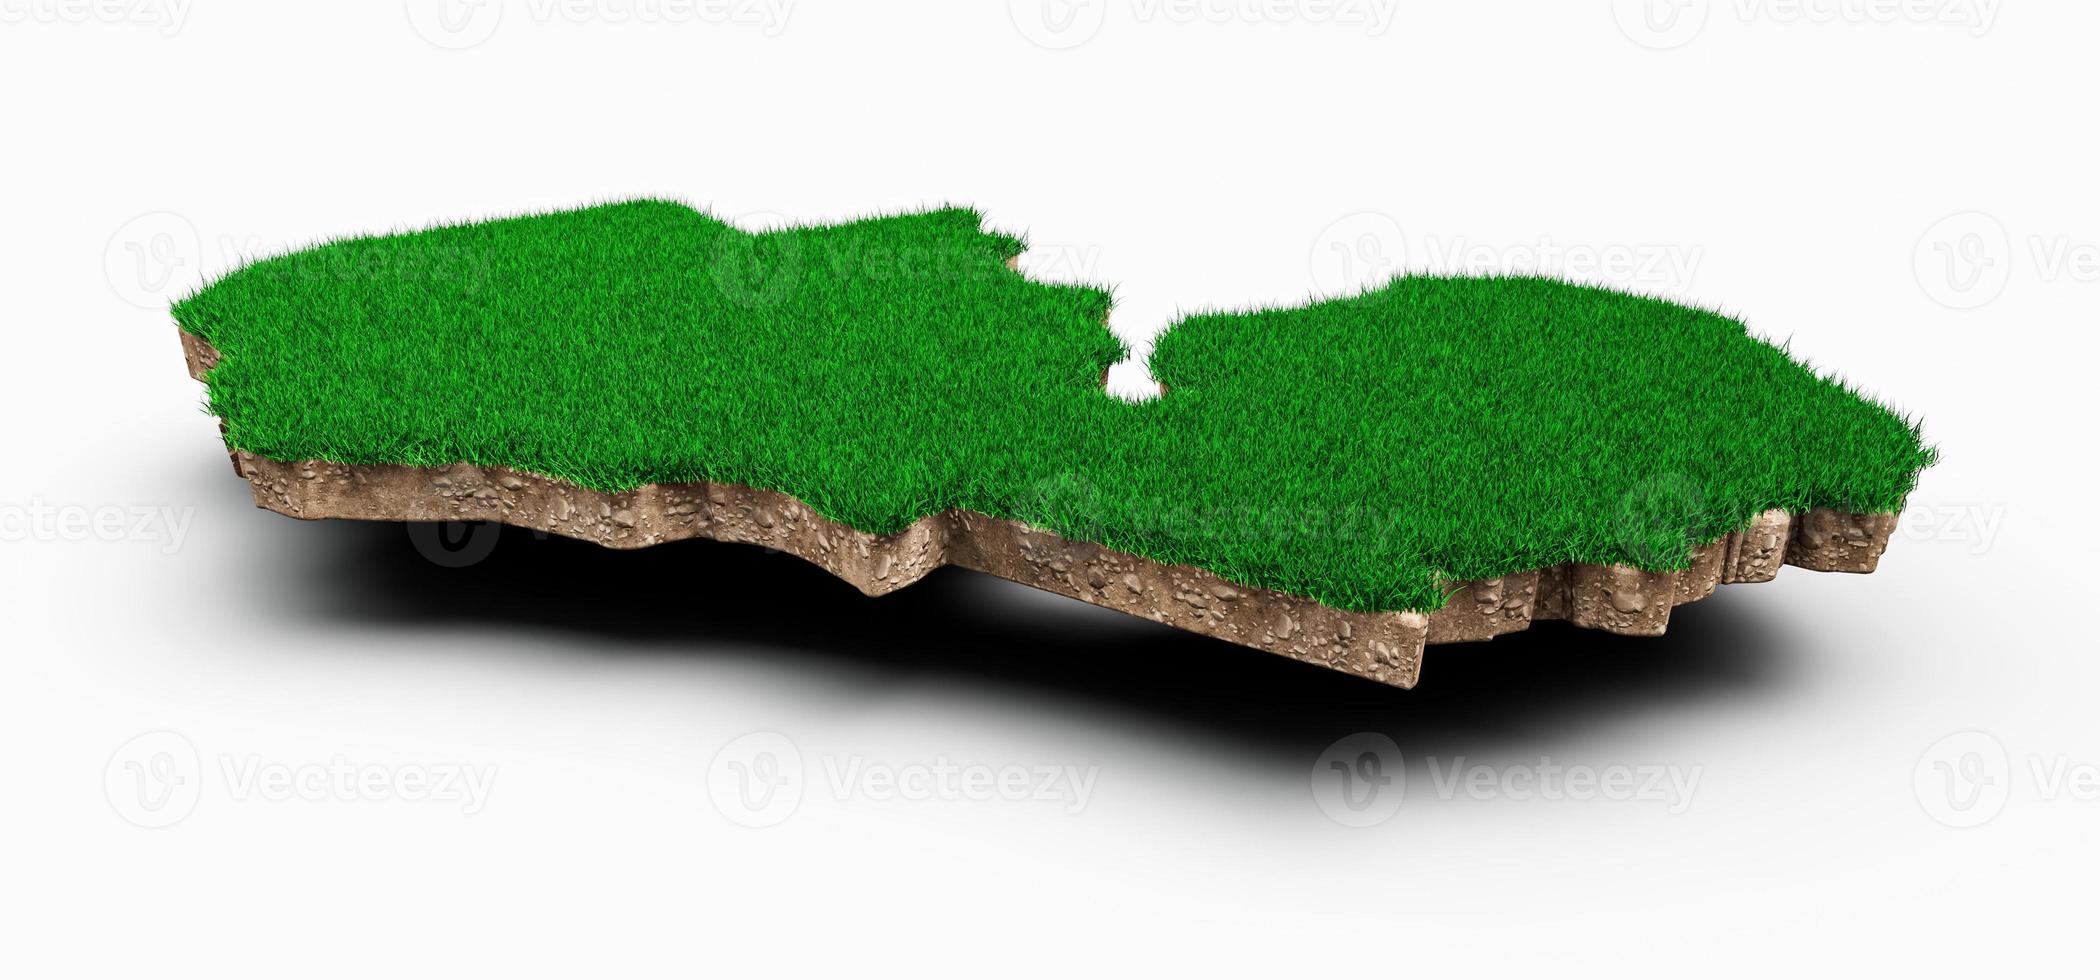 carte de la zambie coupe transversale de la géologie des sols avec de l'herbe verte et de la texture du sol rocheux illustration 3d photo